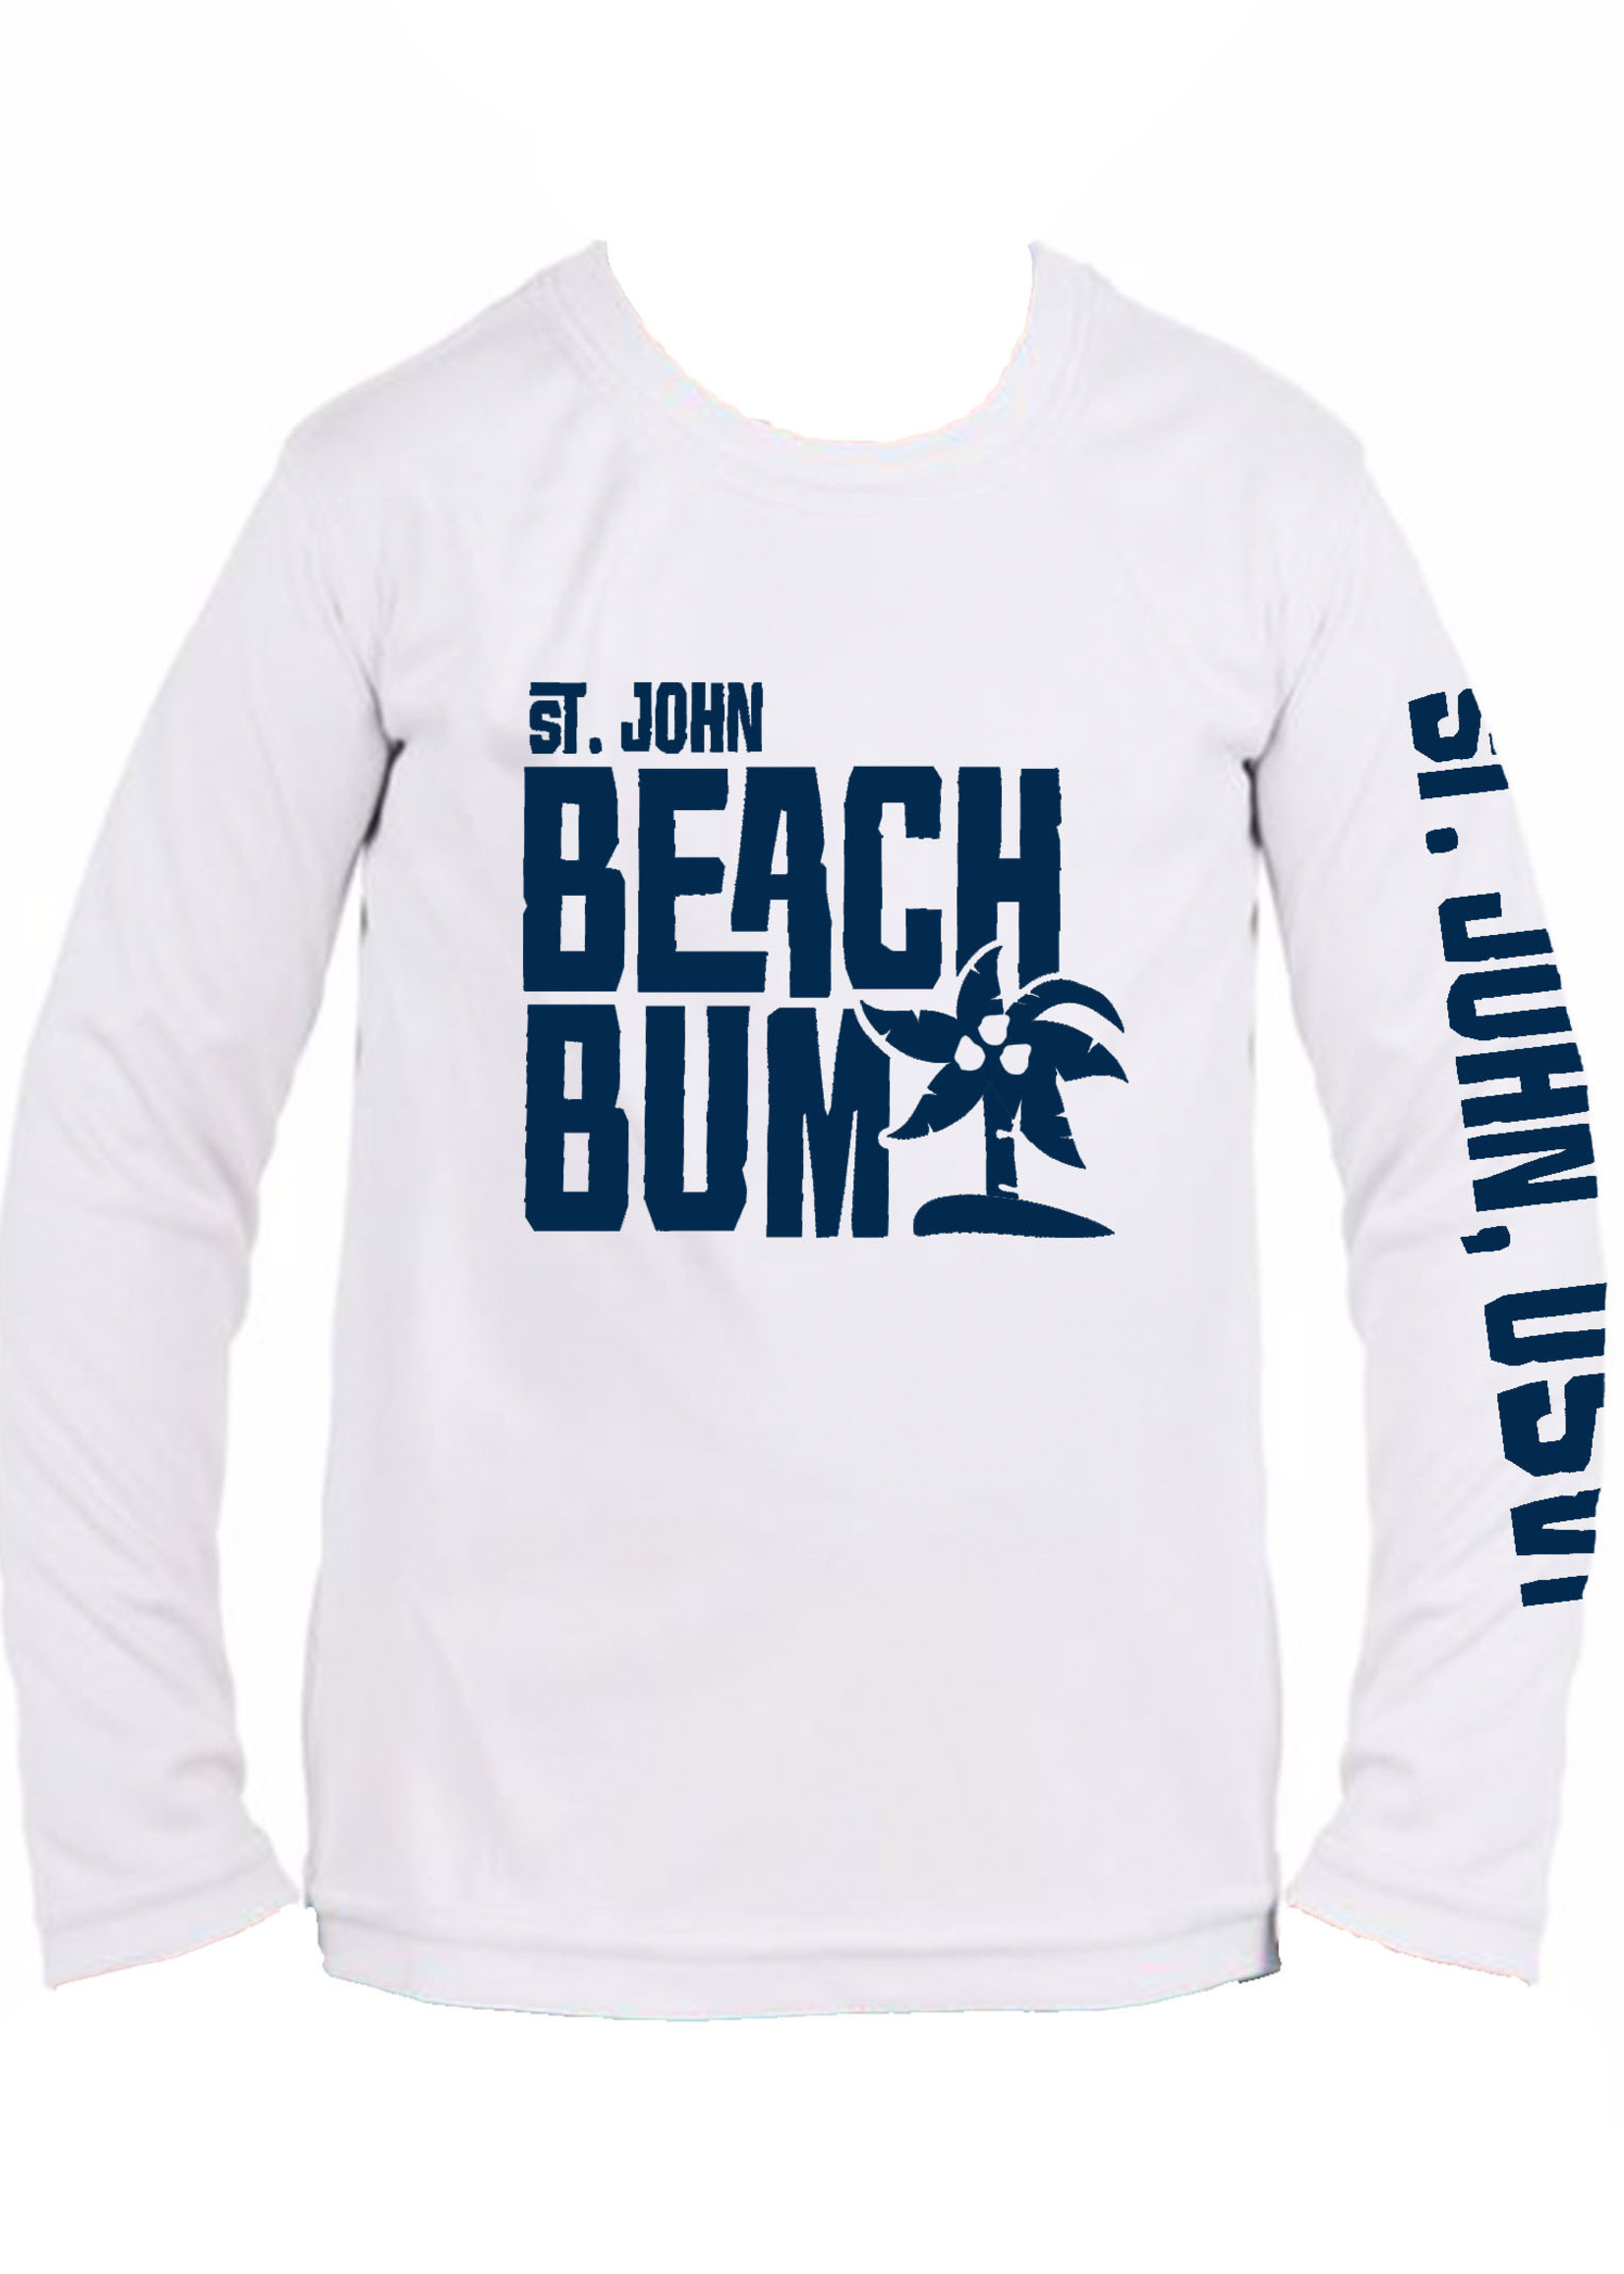 Beach Bum Toddler Rash Guard - Big Bum